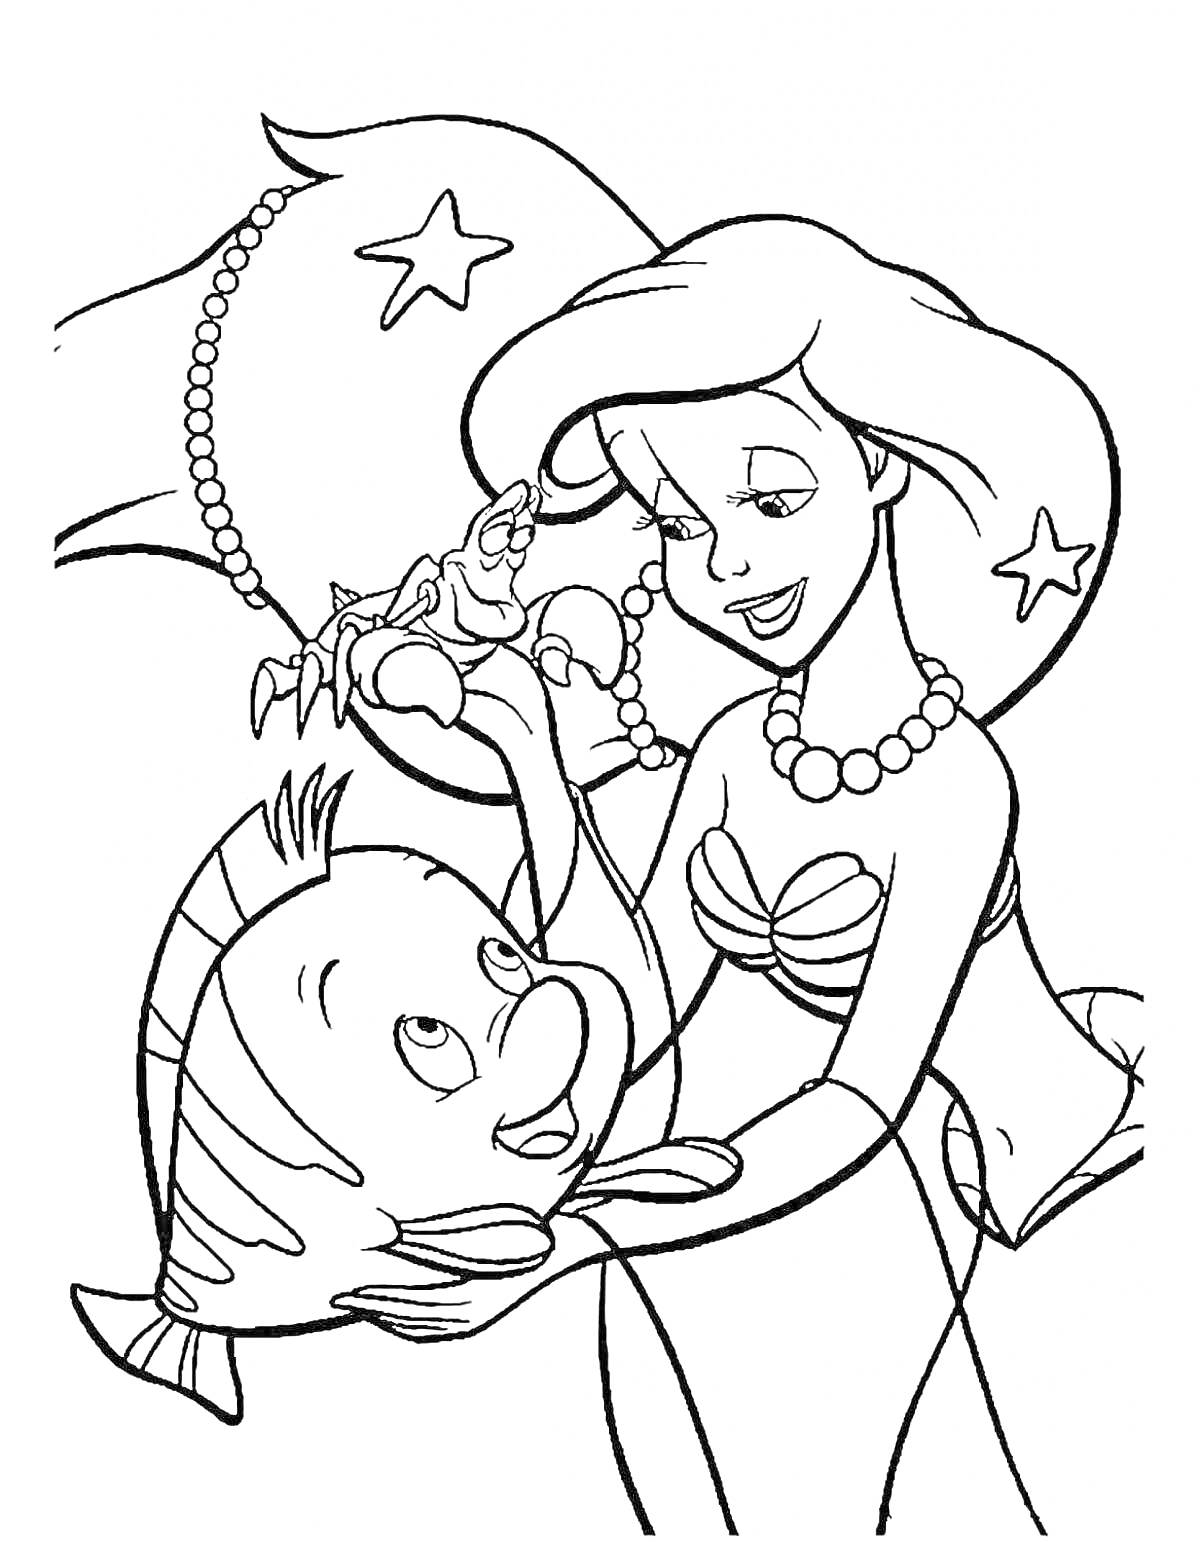 Раскраска Русалка Ариэль с рыбкой и крабом, украшенная звёздочками и ожерельем.